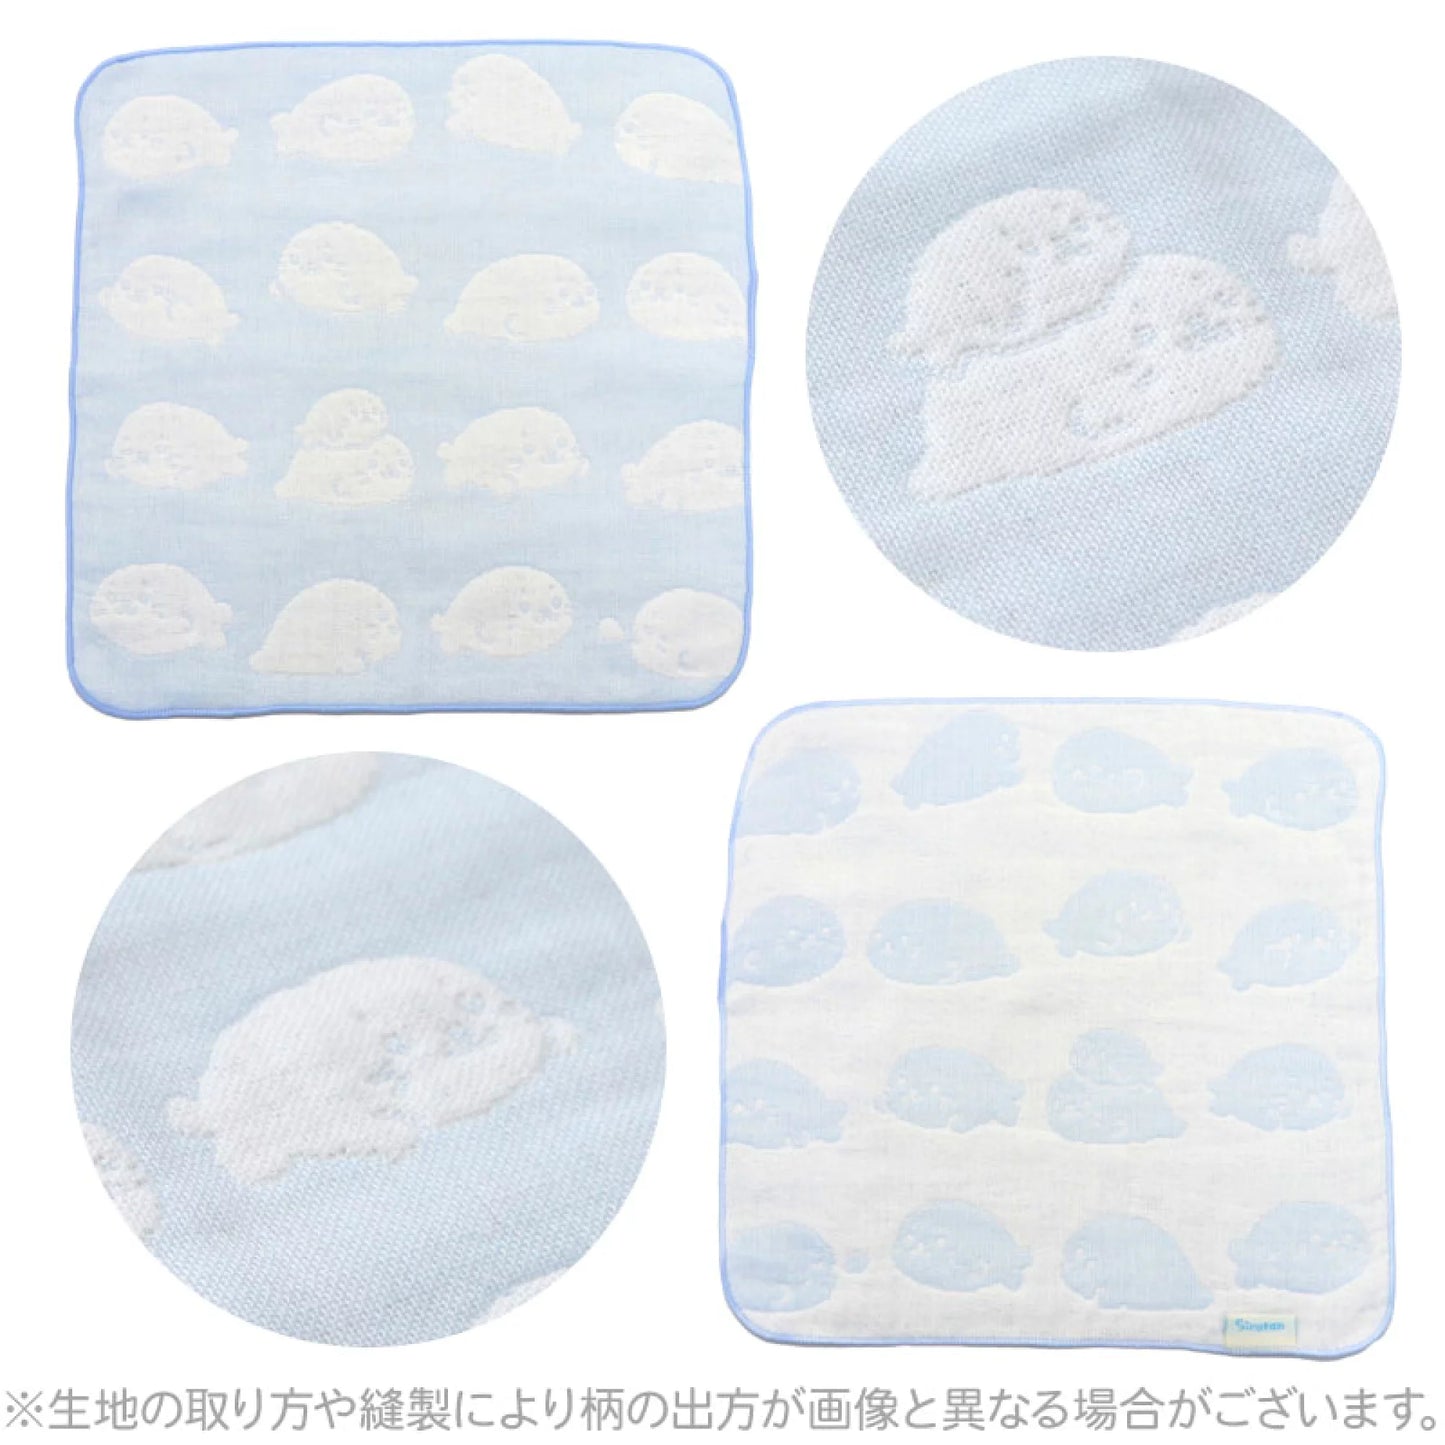 日本製Sirotan六重紗布毛巾 【趴趴款】